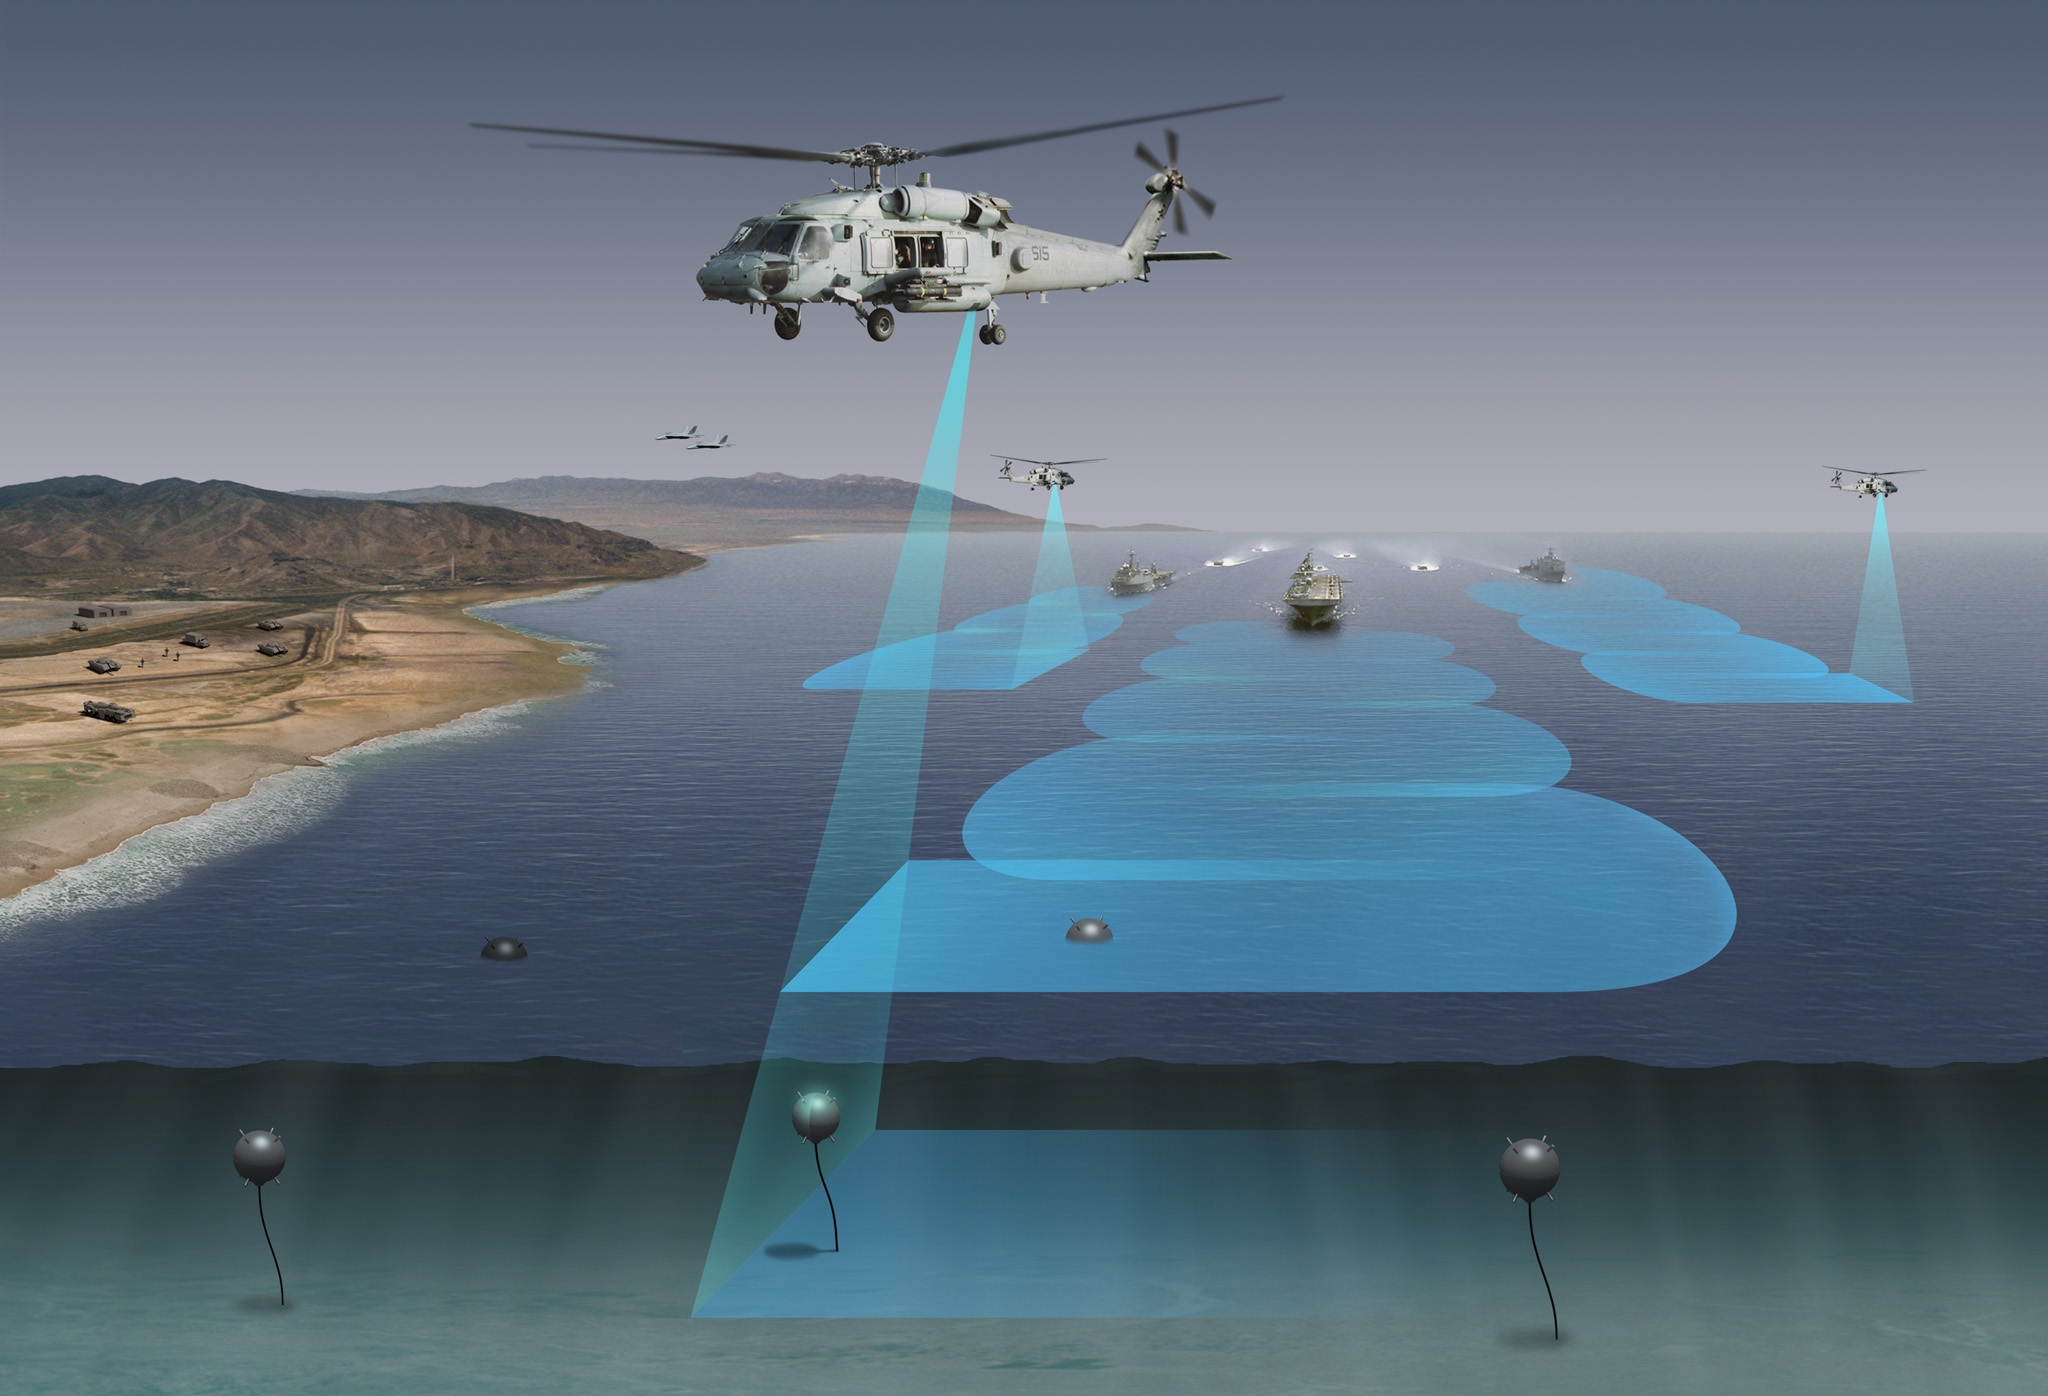 Airborne Laser Mine Detection System (ALMDS)